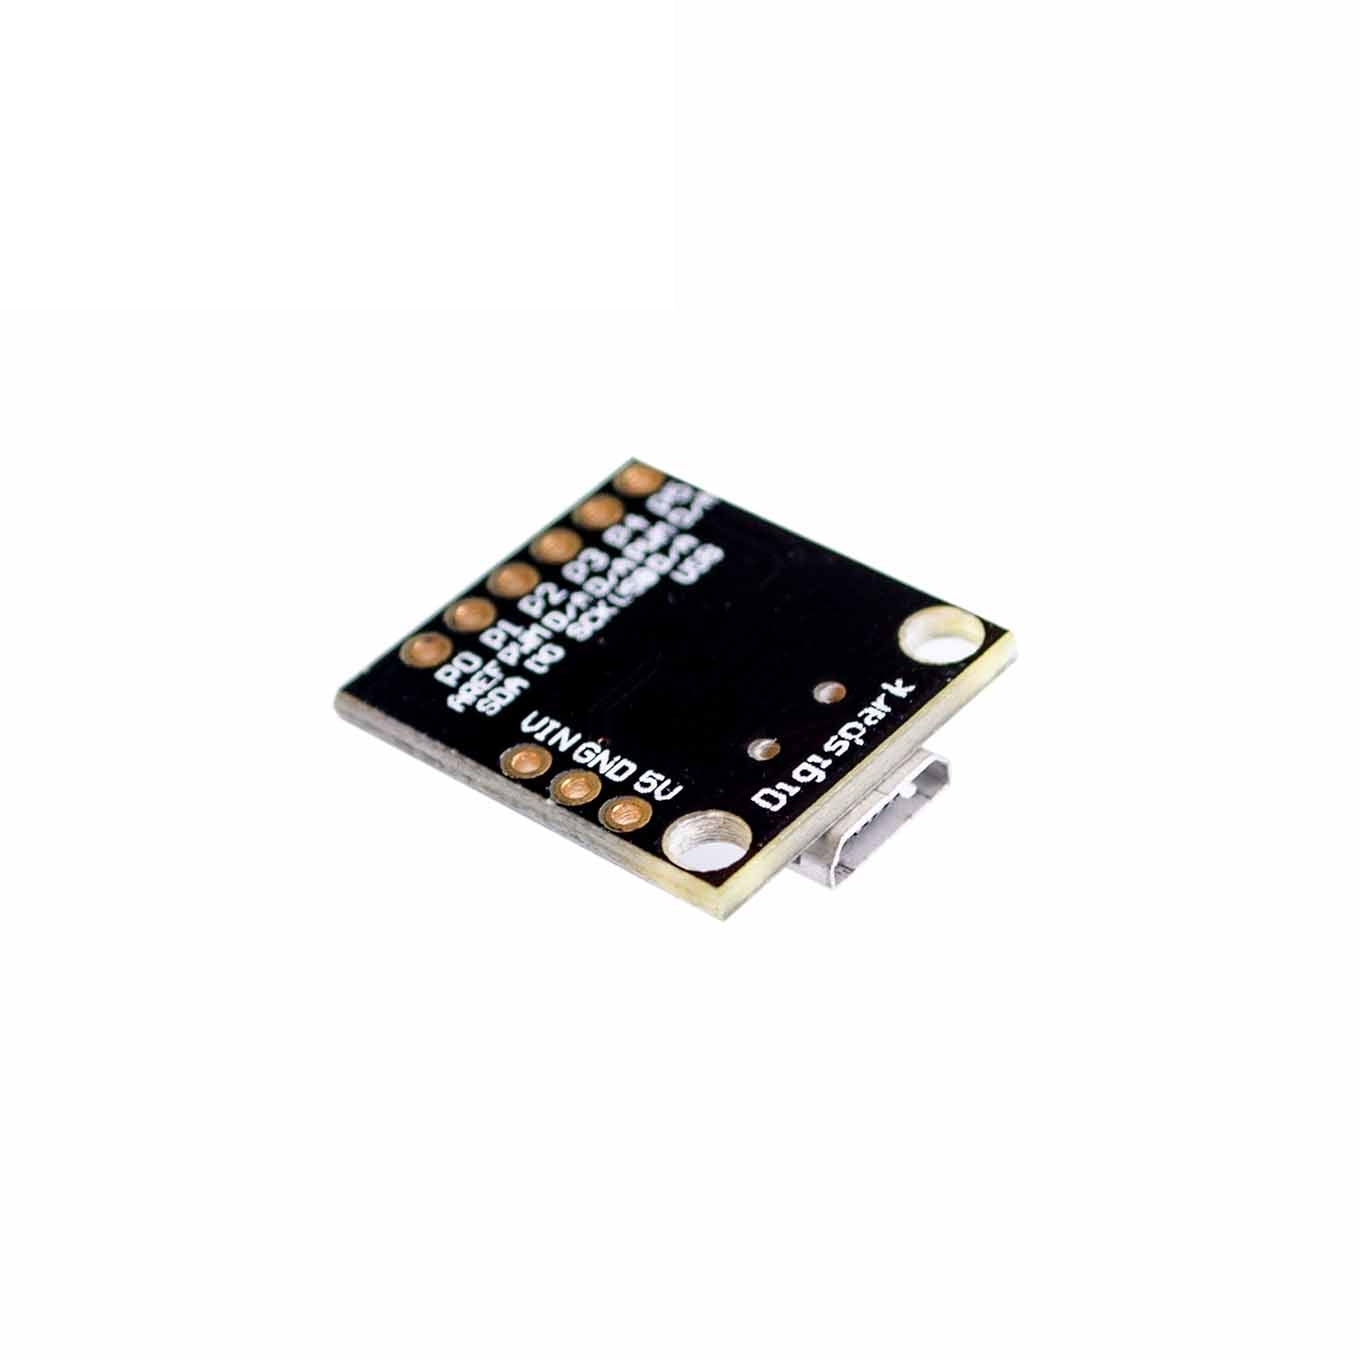 ATtiny85 Micro Mini USB MCU Development Board Module HW-019B